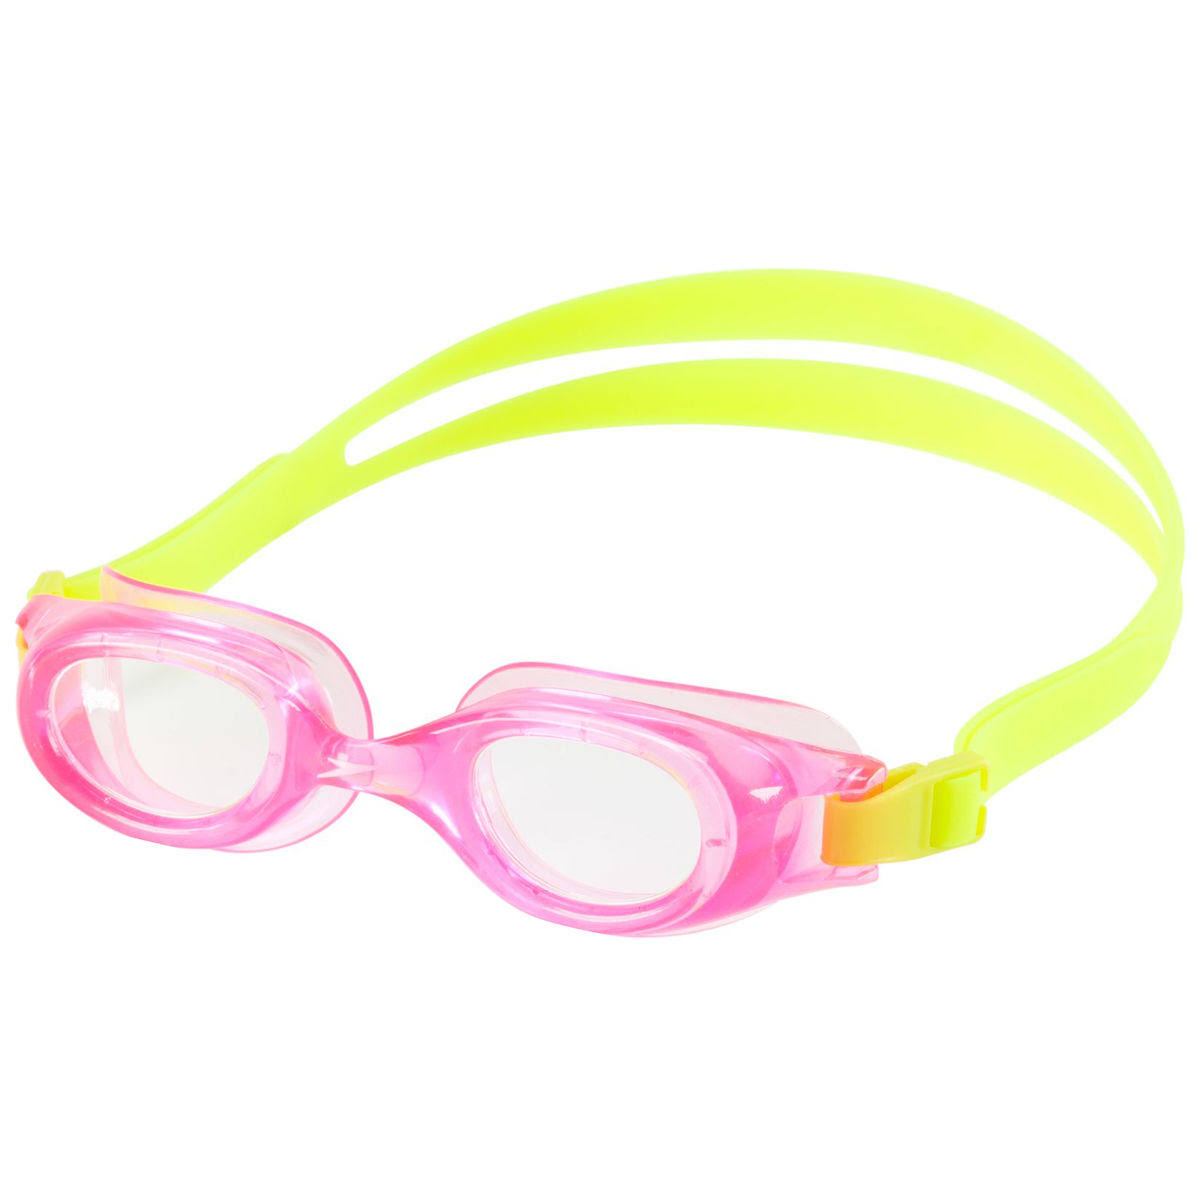 Speedo Junior Hydrospex Classic Goggles - Bright Pink